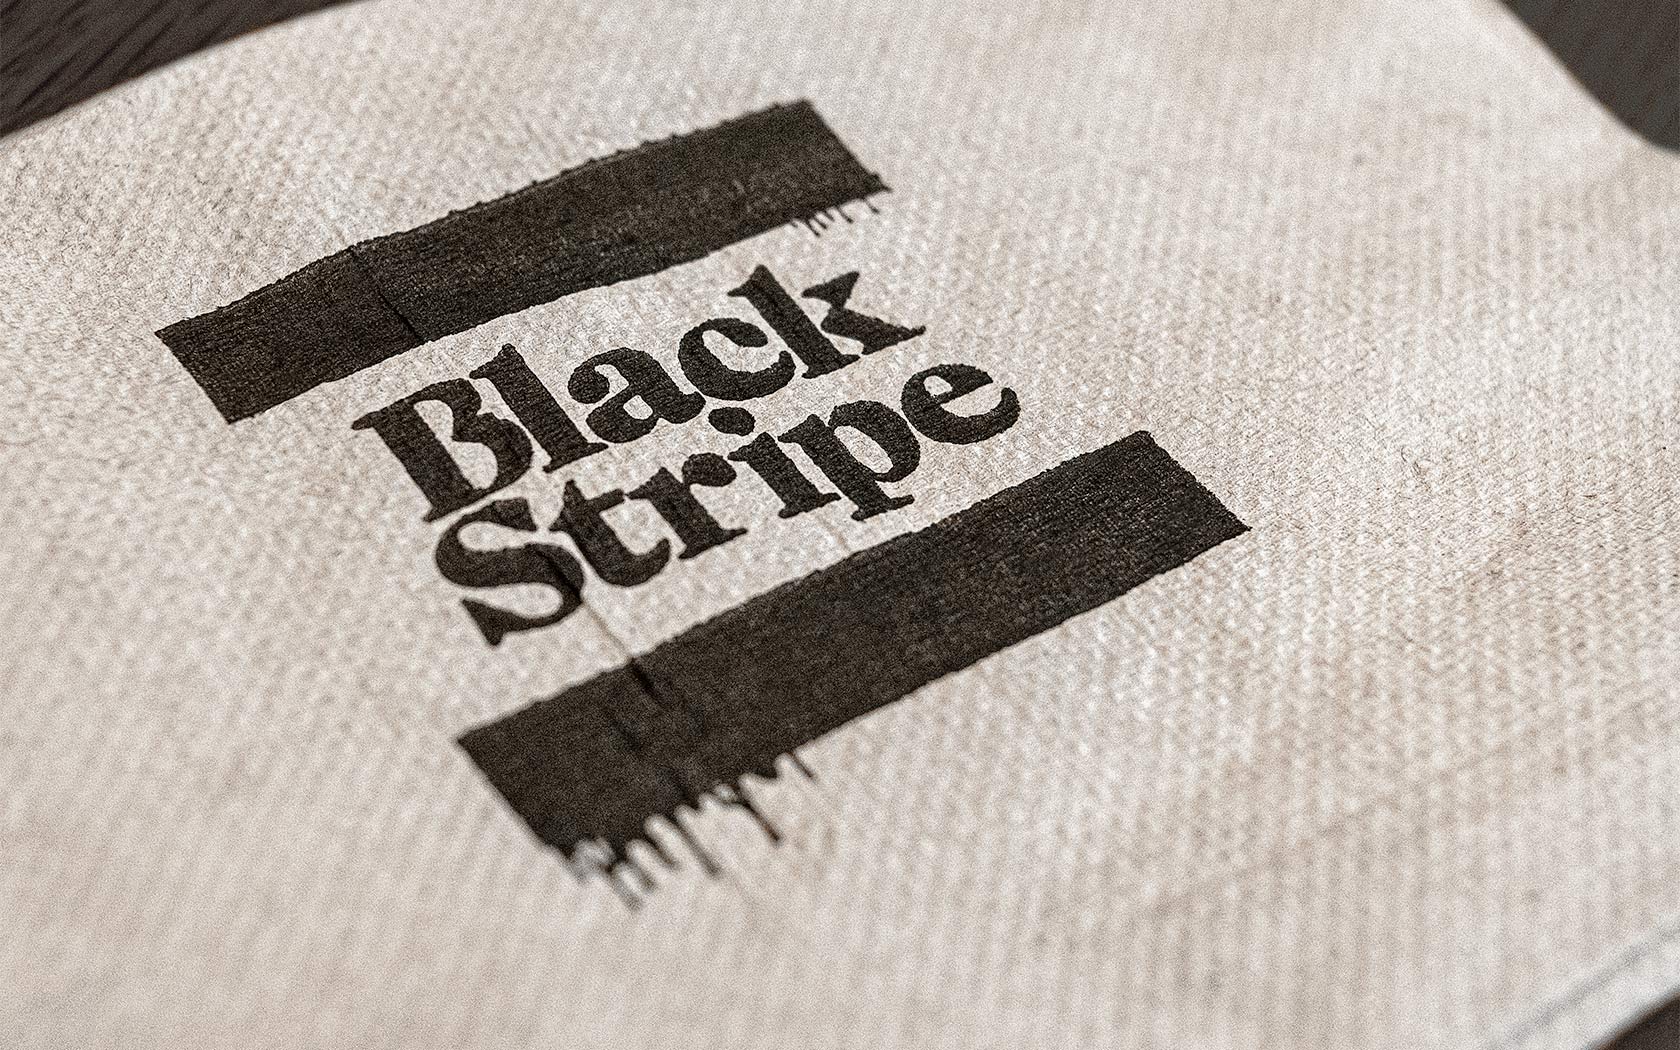 Black Stripe. Tissue paper branding